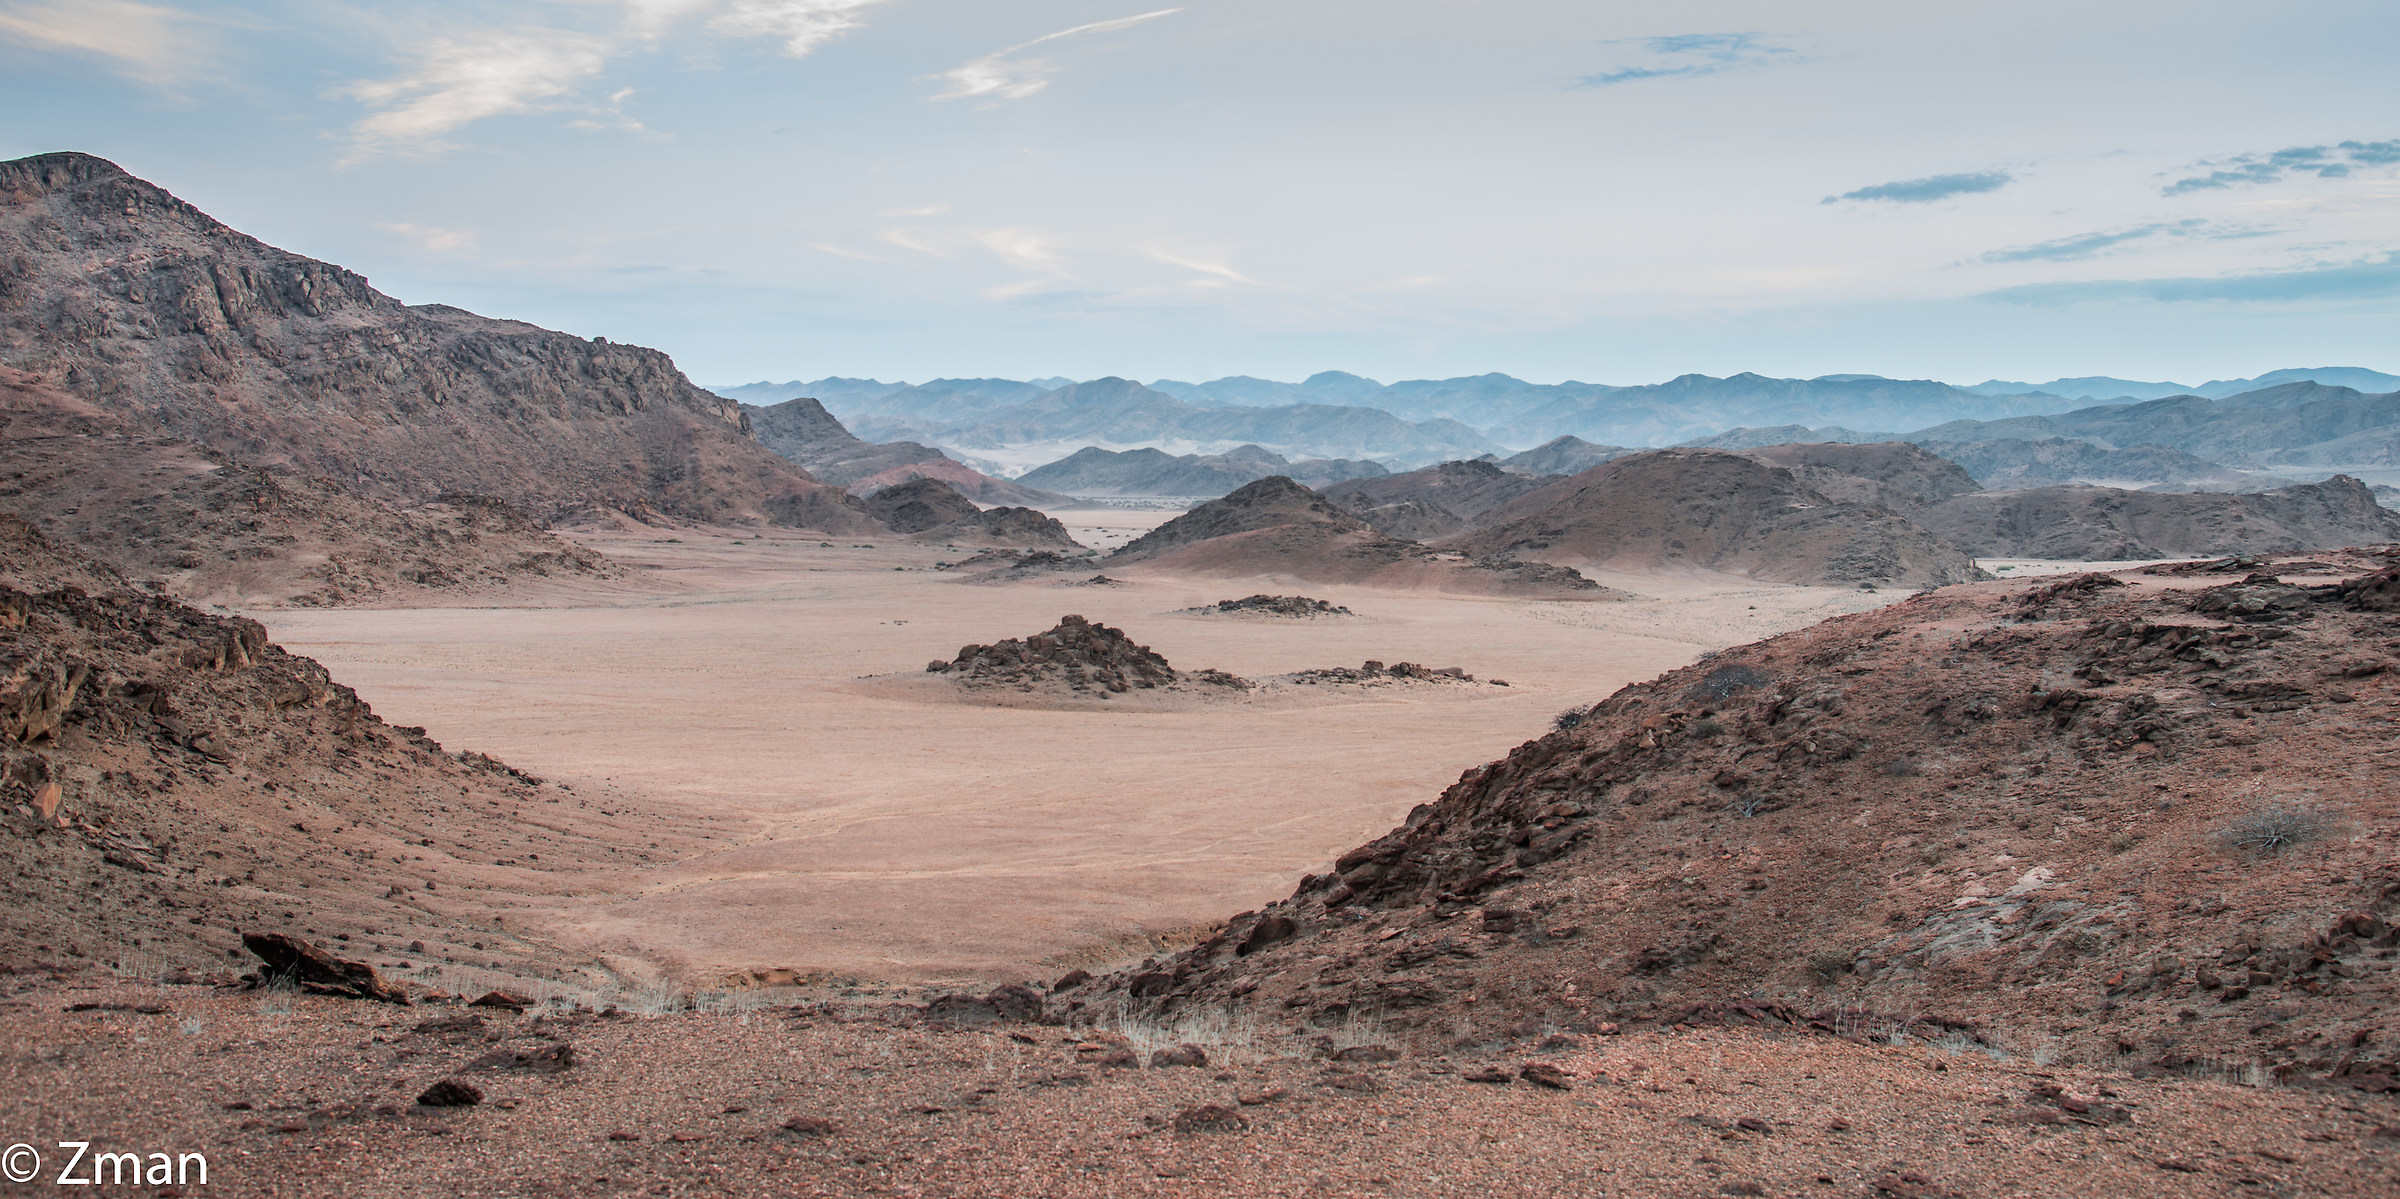 The Namibian Desert...